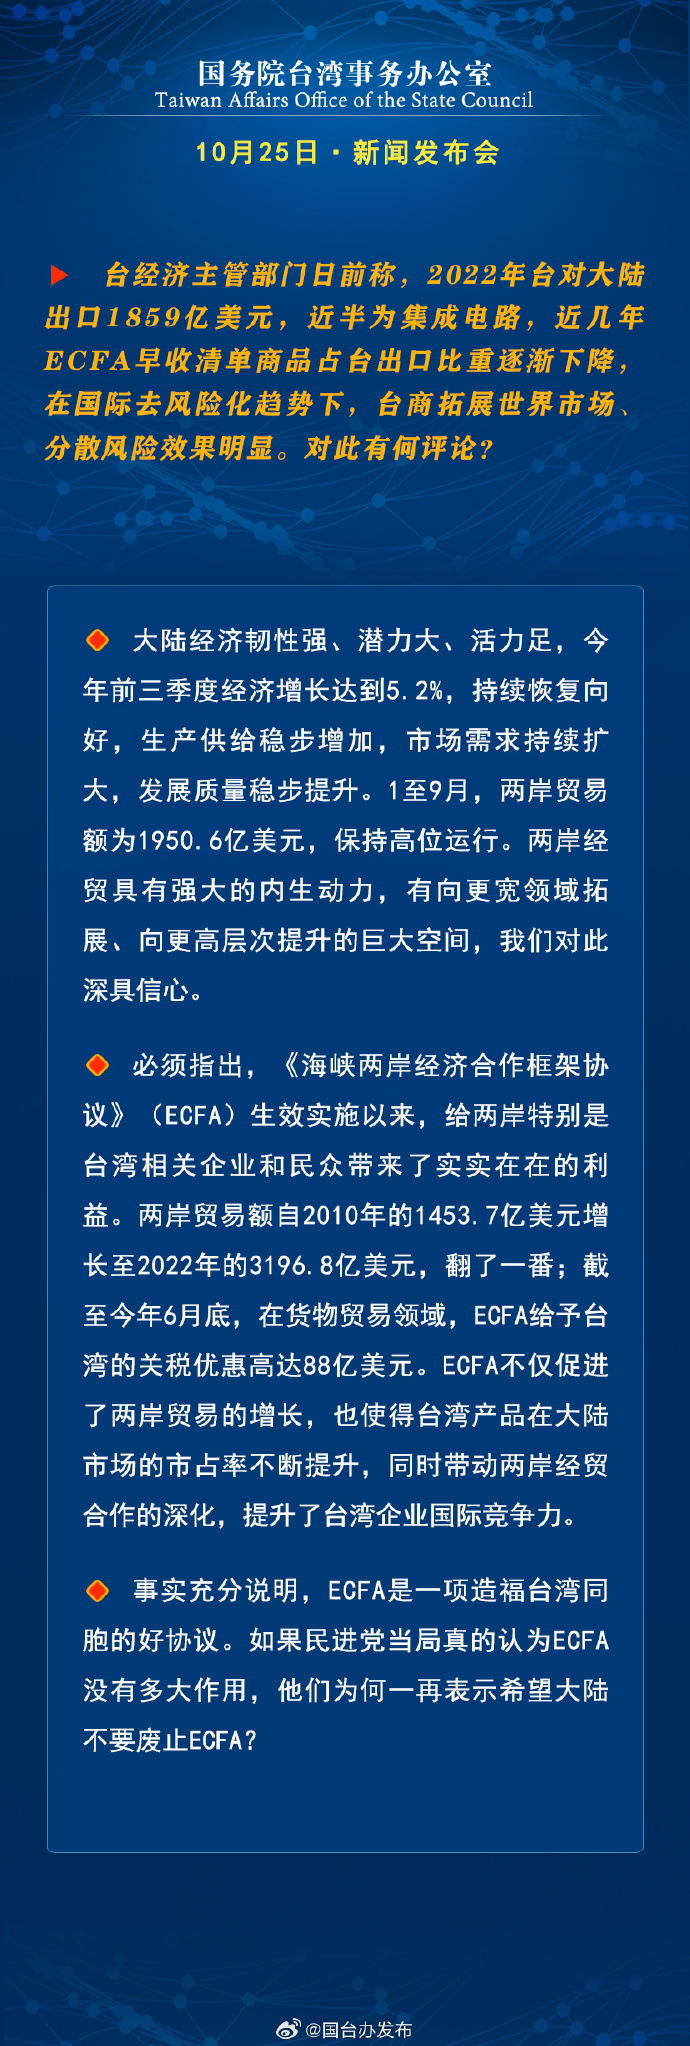 國務院台灣事務辦公室10月25日·新聞發佈會